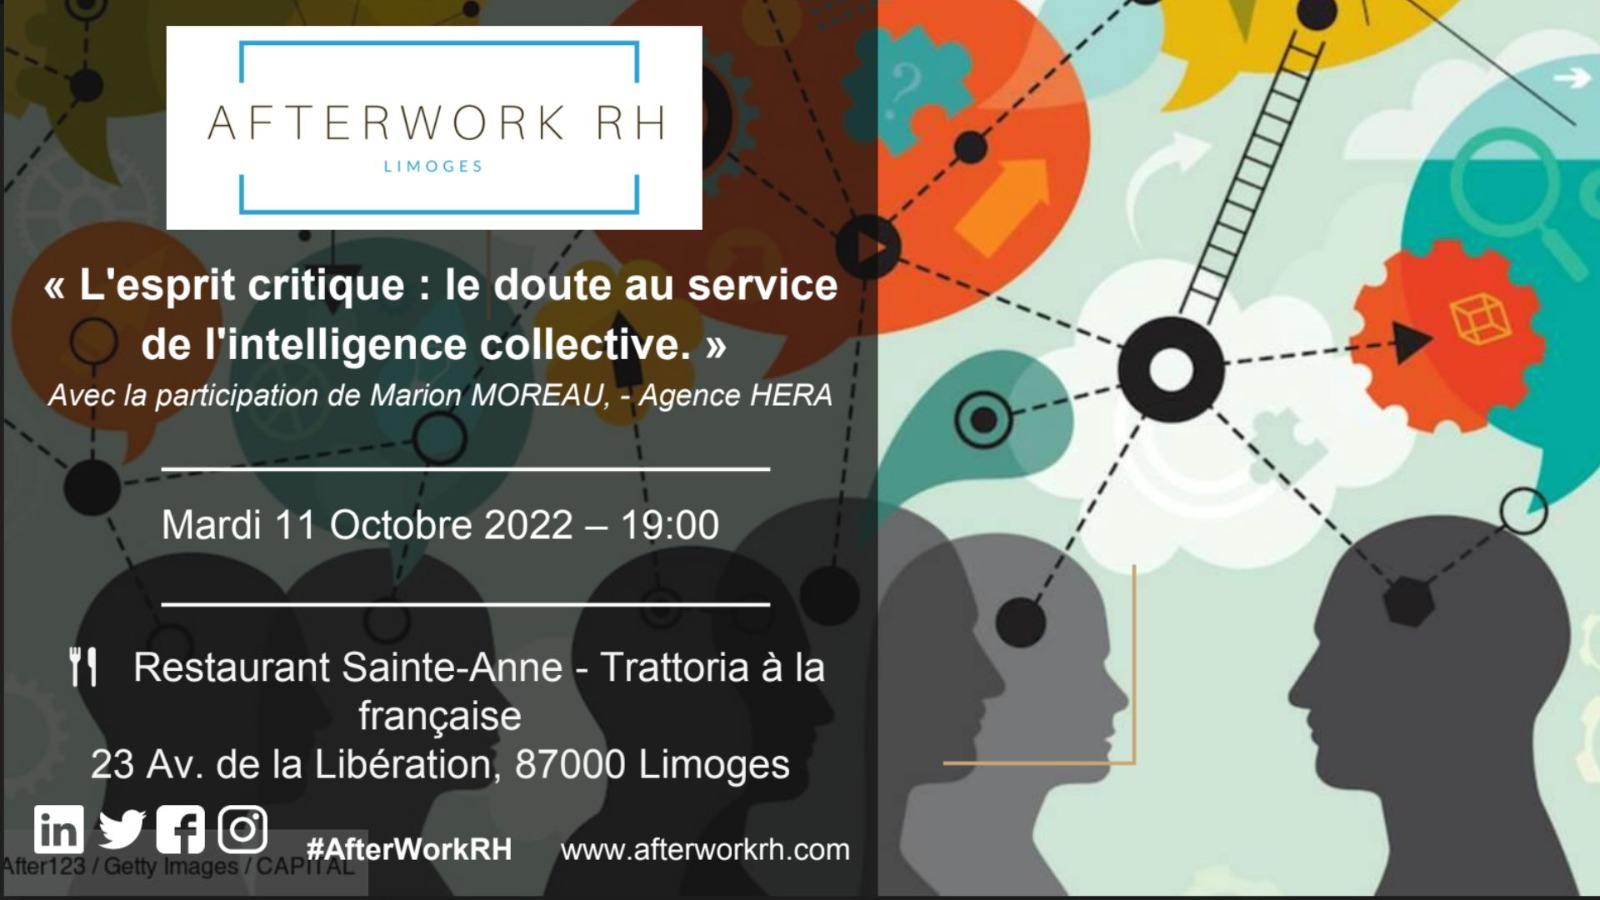 AfterWork RH Limoges octobre 2022